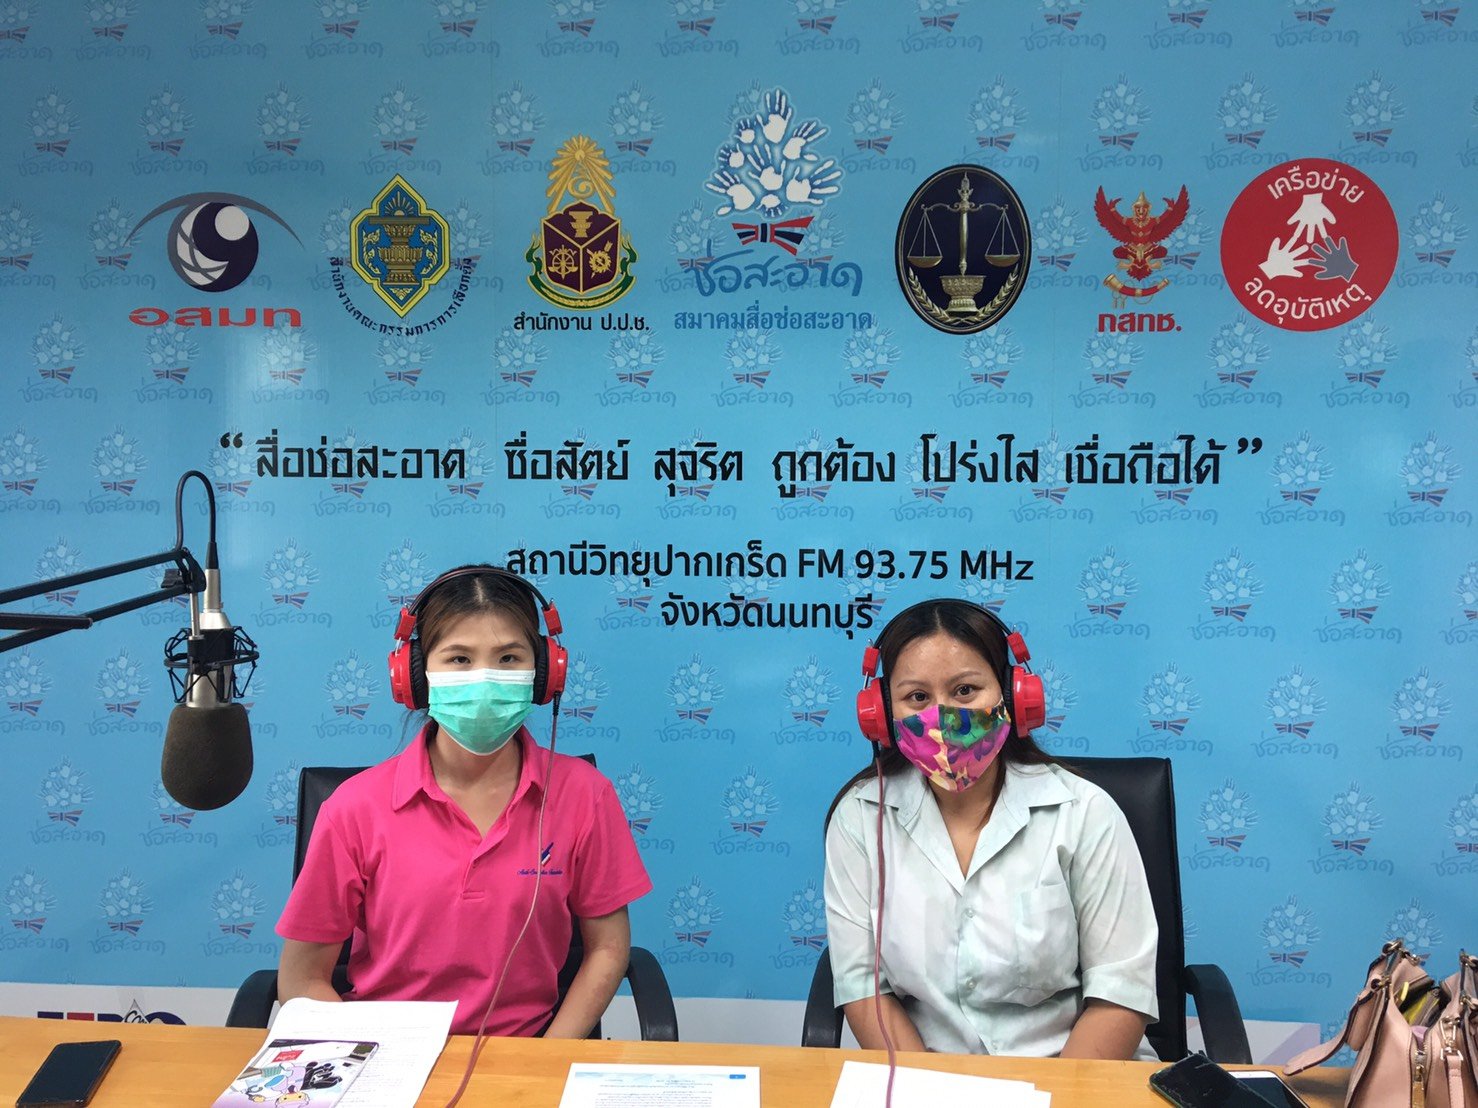 รายการ “คนไทยไม่ทนต่อการทุจริต” วันเสาร์ที่ 1 พฤษภาคม 2564 เวลา 18.30-19.00 น.